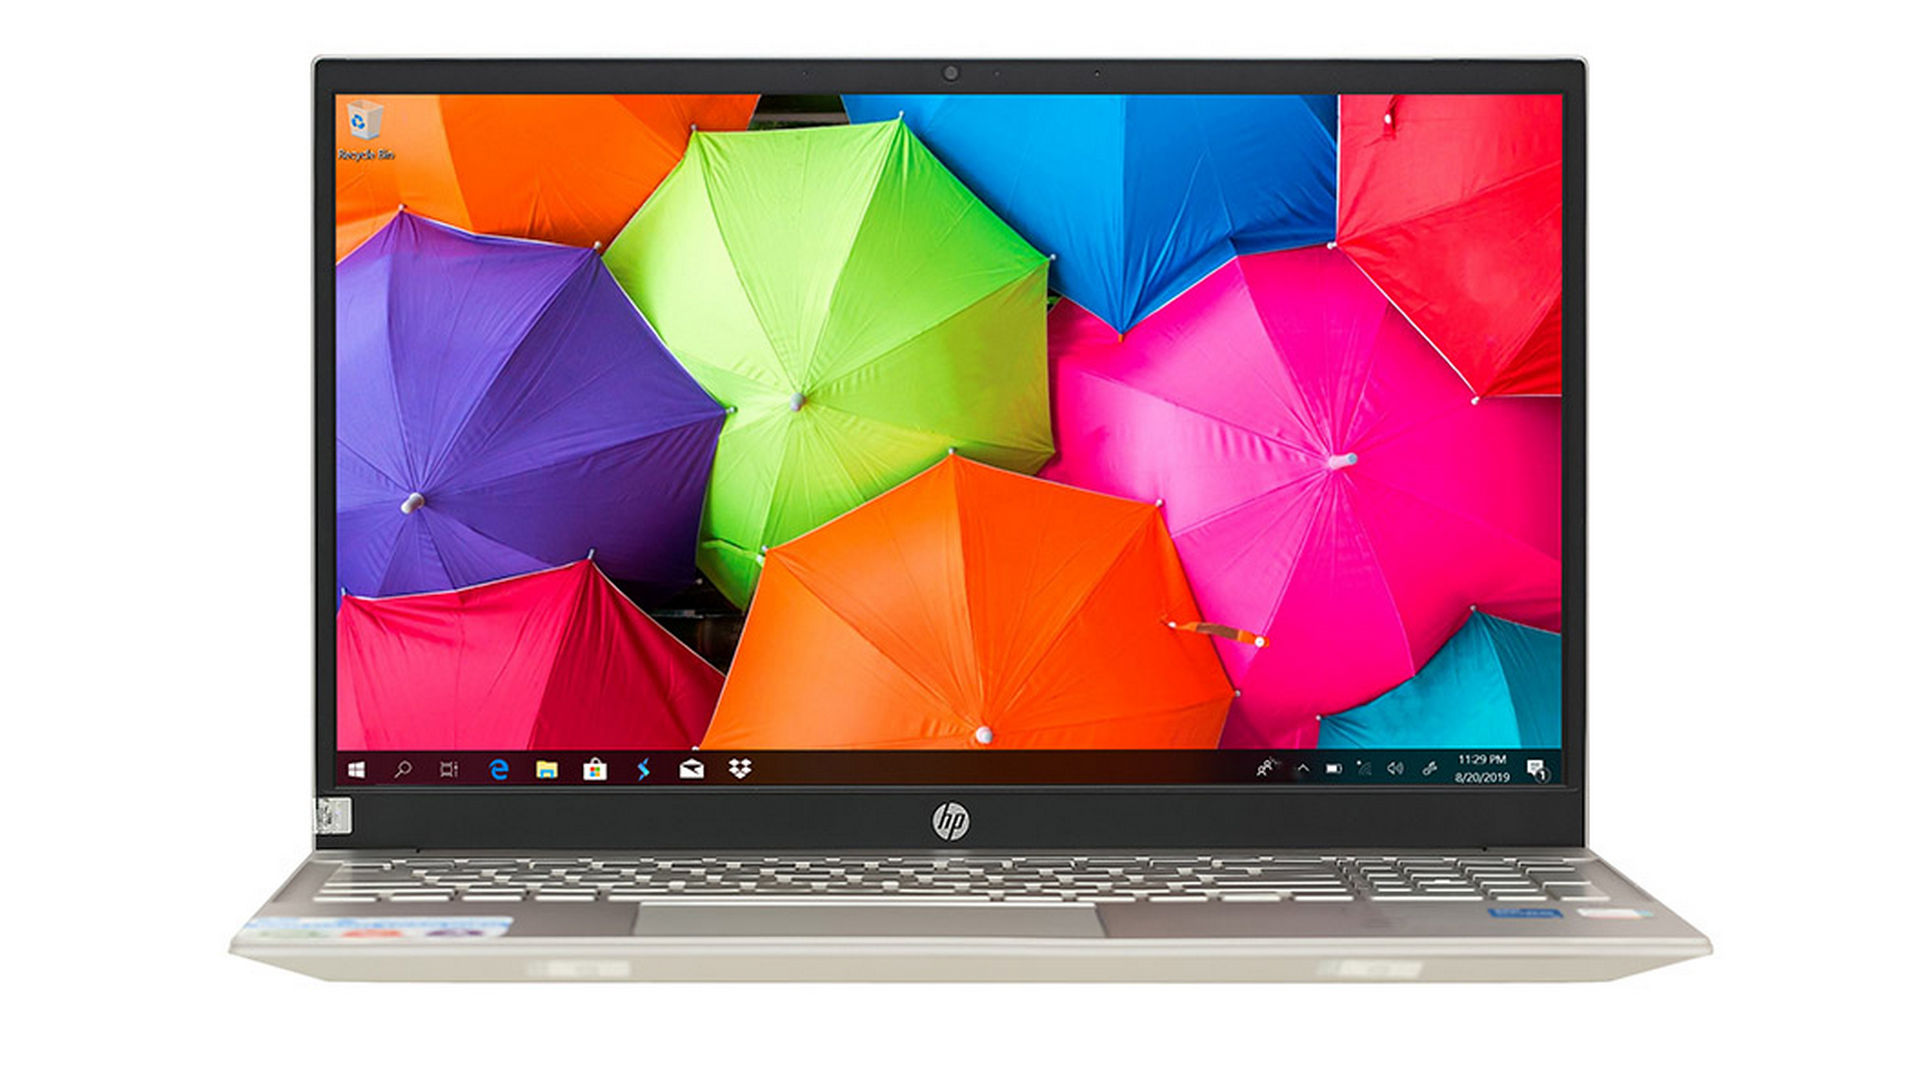 Máy tính xách tay HP Pavilion 15-eg0505TX là sự lựa chọn hoàn hảo cho những ai cần một dòng sản phẩm đa năng và hiệu suất cao. Với thiết kế tinh tế kết hợp các tính năng tiên tiến của công nghệ, máy tính này sẽ đáp ứng mọi nhu cầu công việc và giải trí của bạn. Hãy xem hình ảnh để khám phá thêm về laptop này.